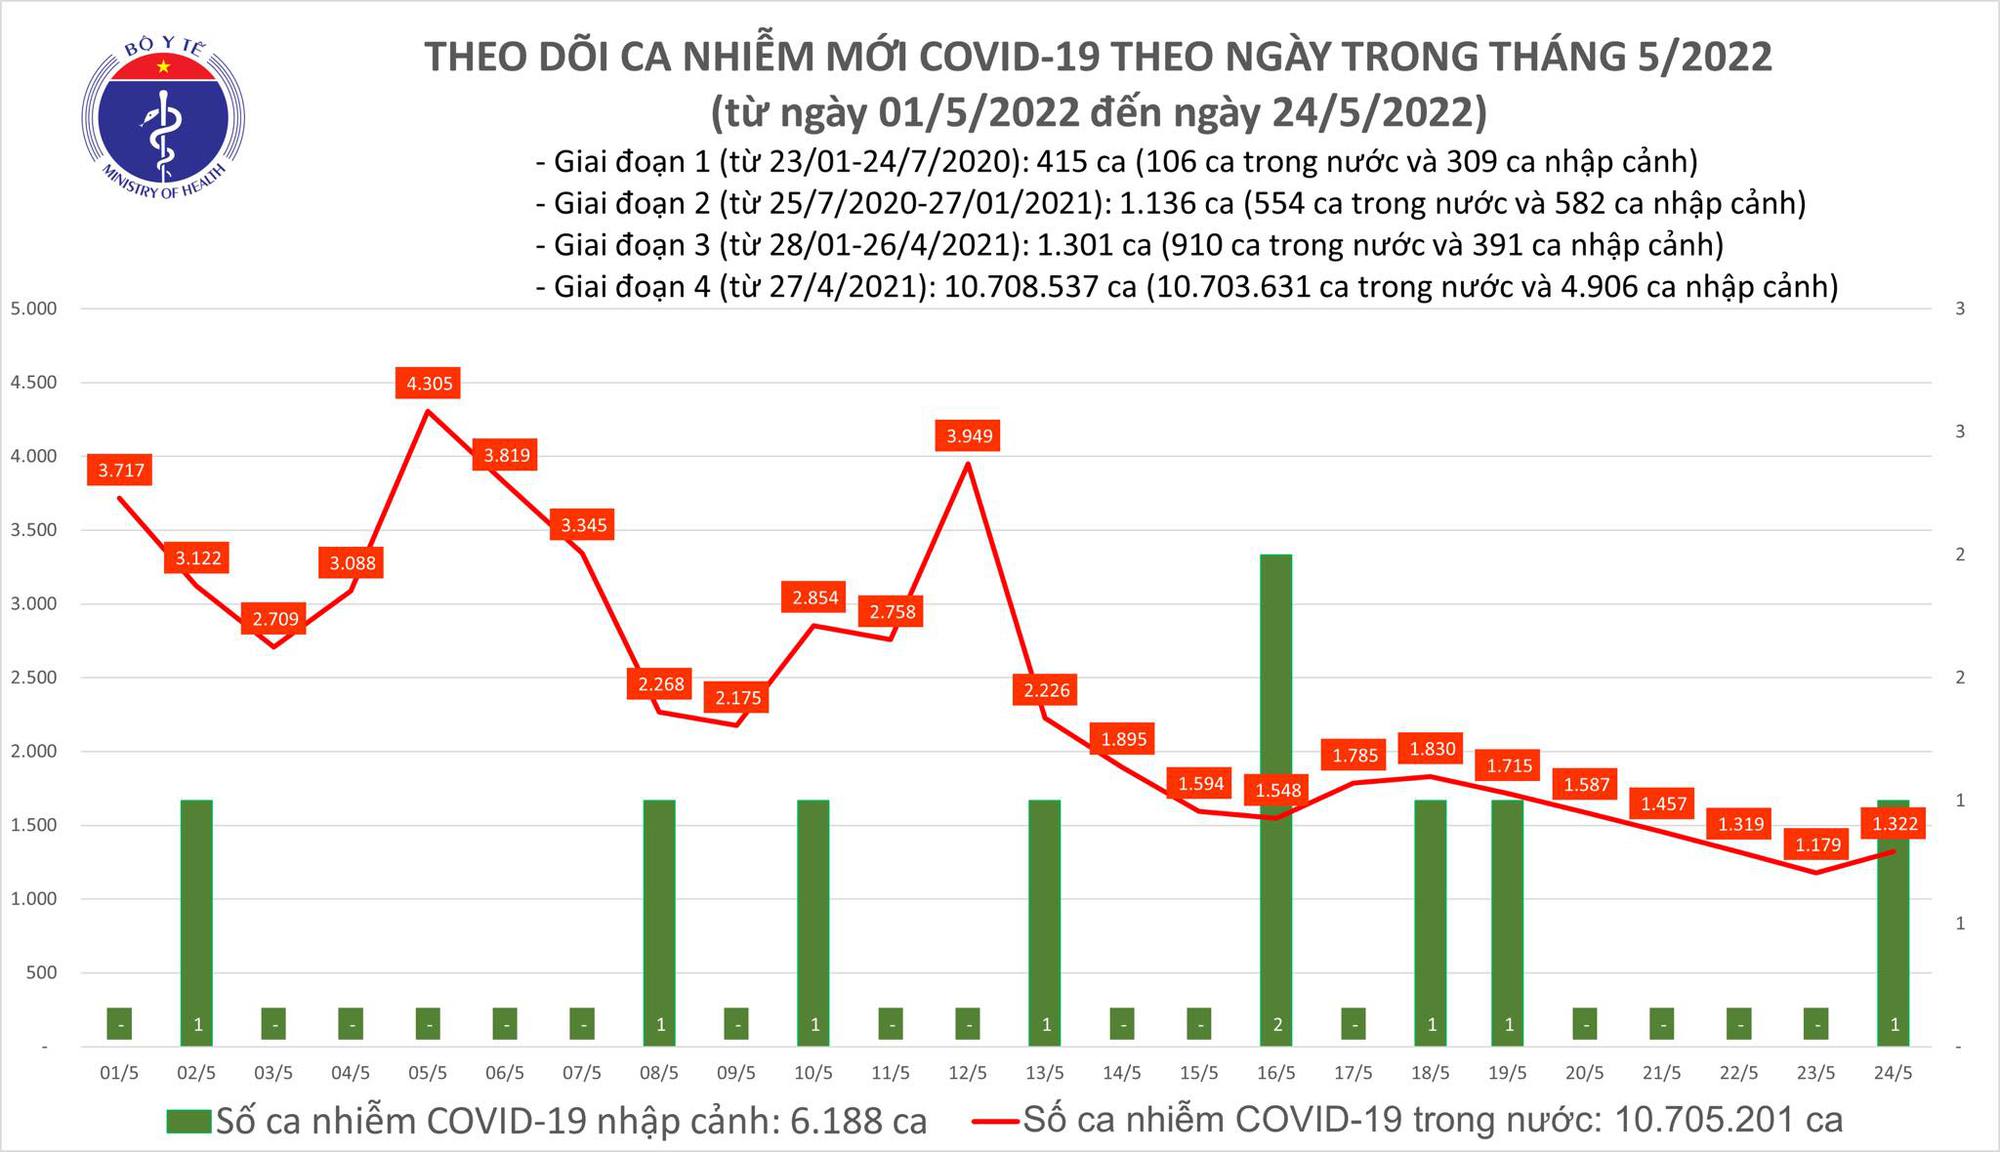 Ngày 24/5: Có 1.323 ca COVID-19; không F0 nào tử vong; chỉ còn 216 F0 nặng - Ảnh 1.